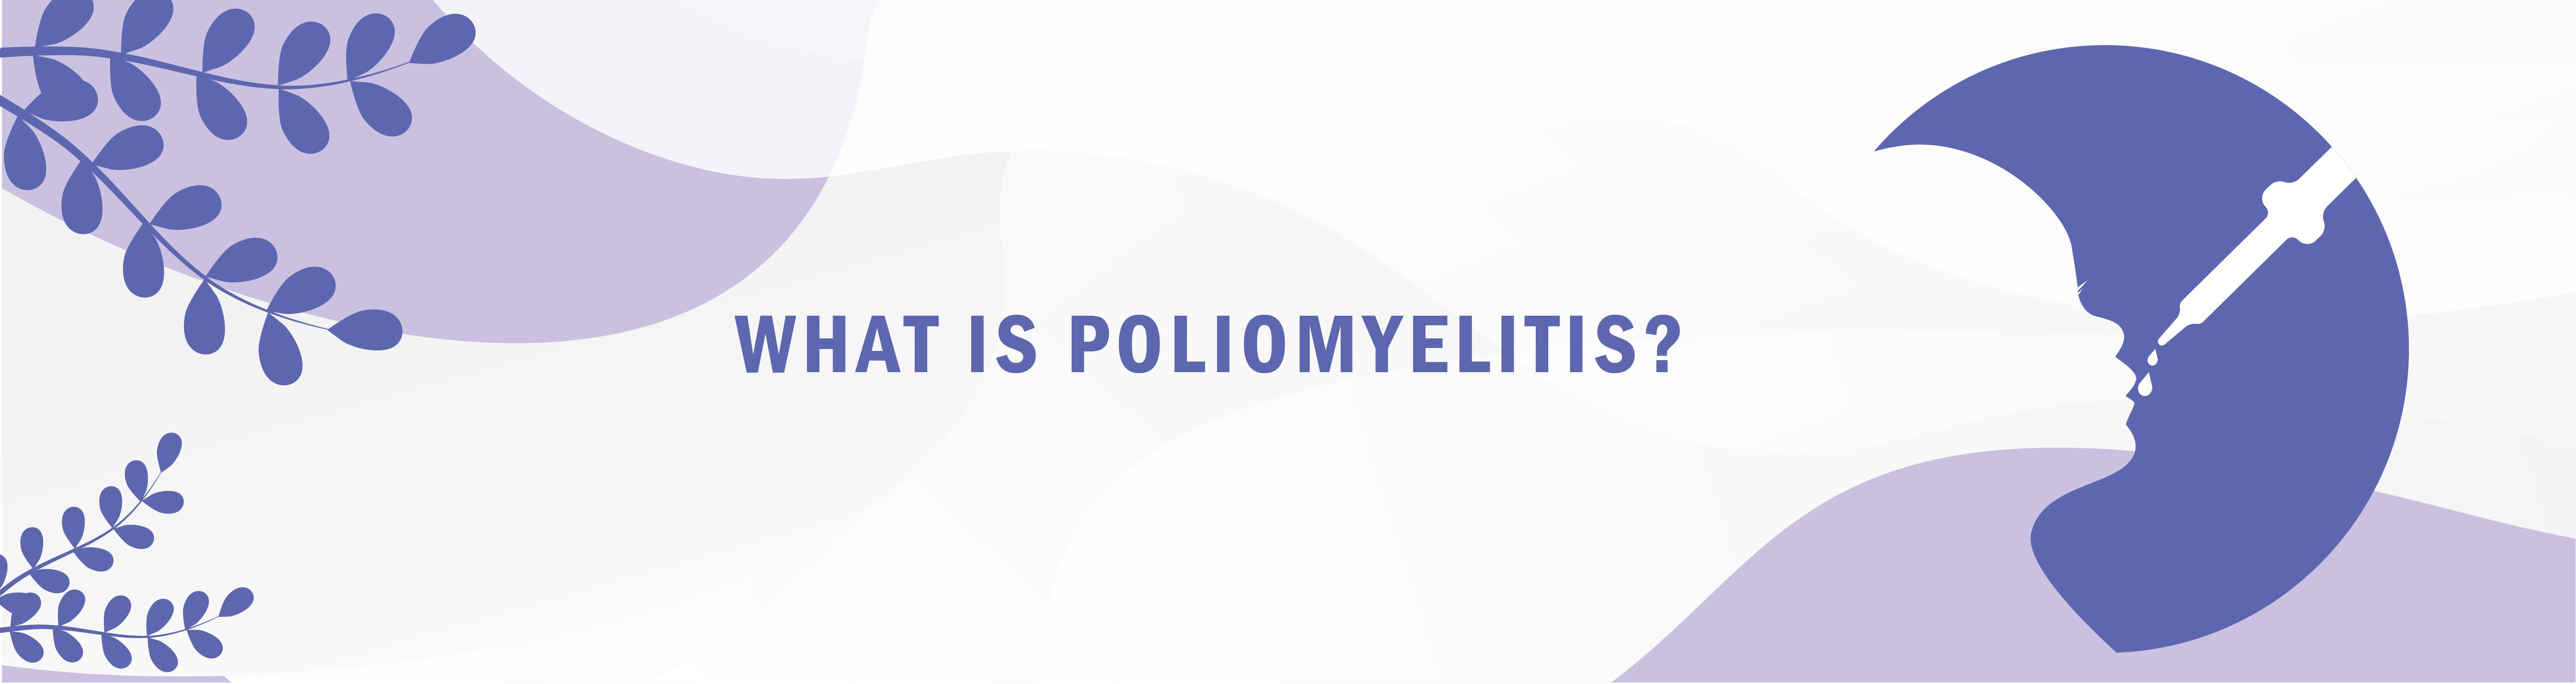 What is Poliomyelitis?